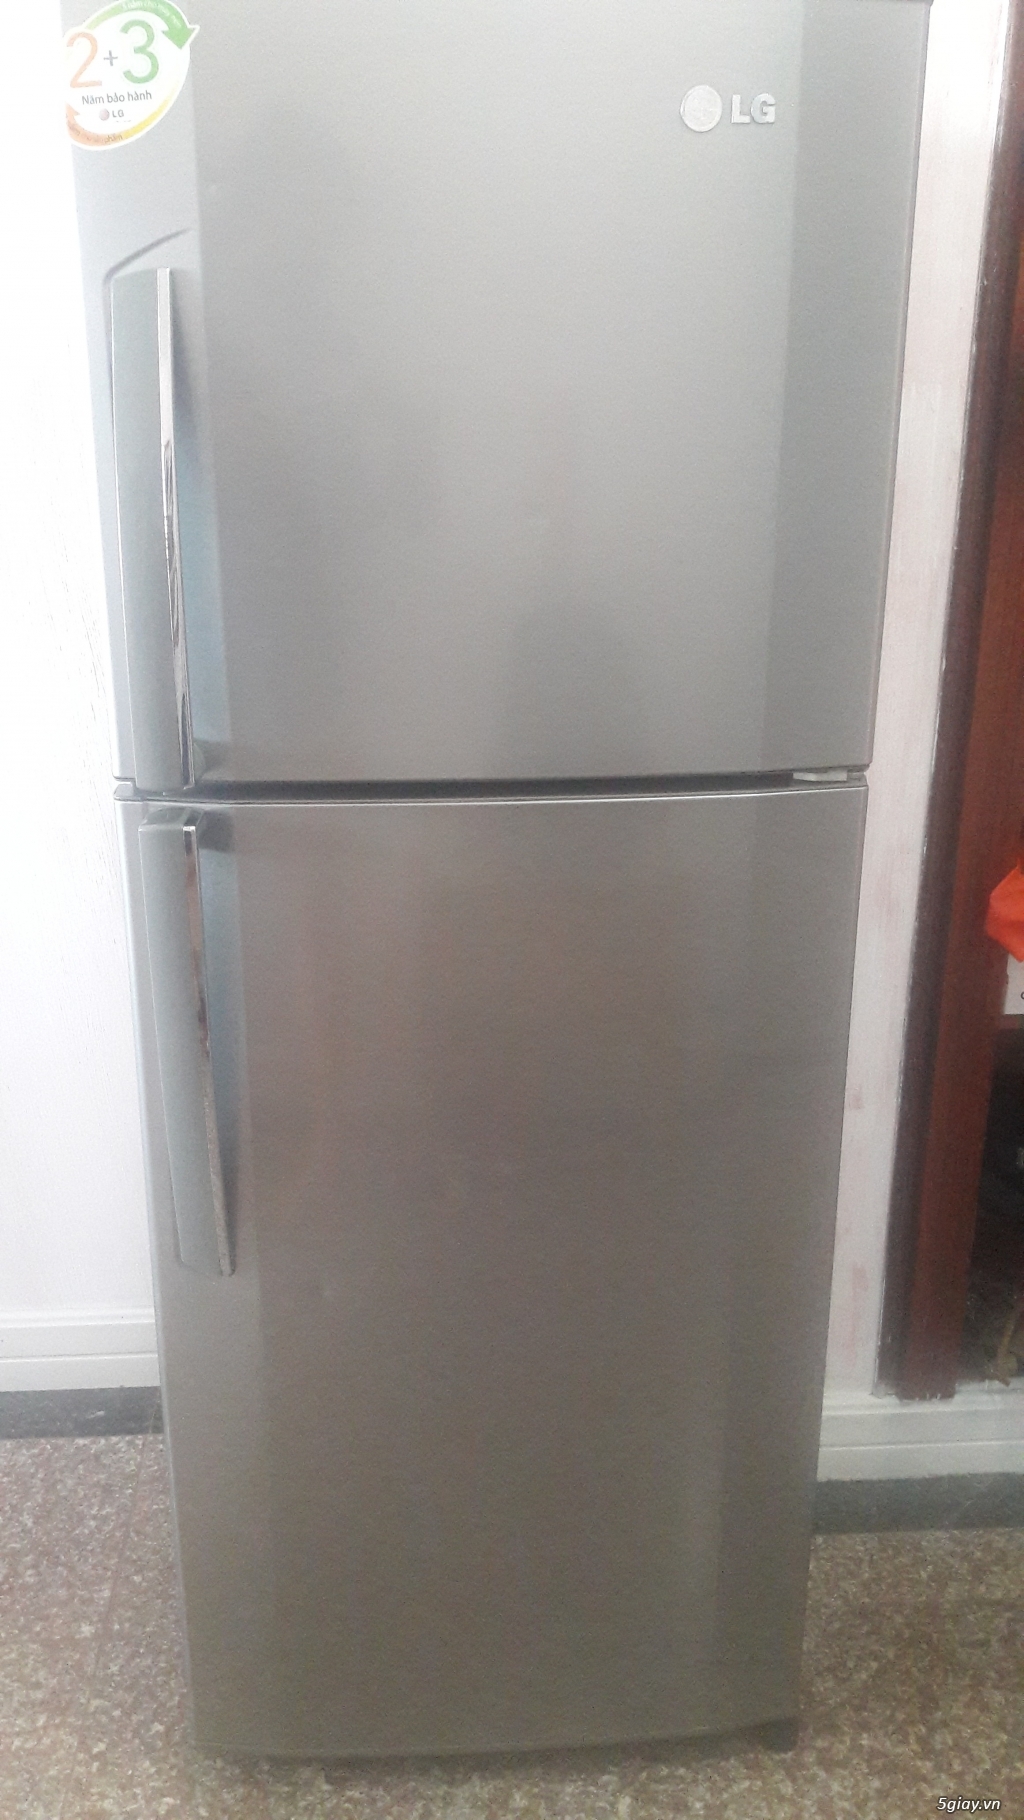 Tủ lạnh LG-185 lít- 2 cửa, 6 ngăn- còn mới 85%